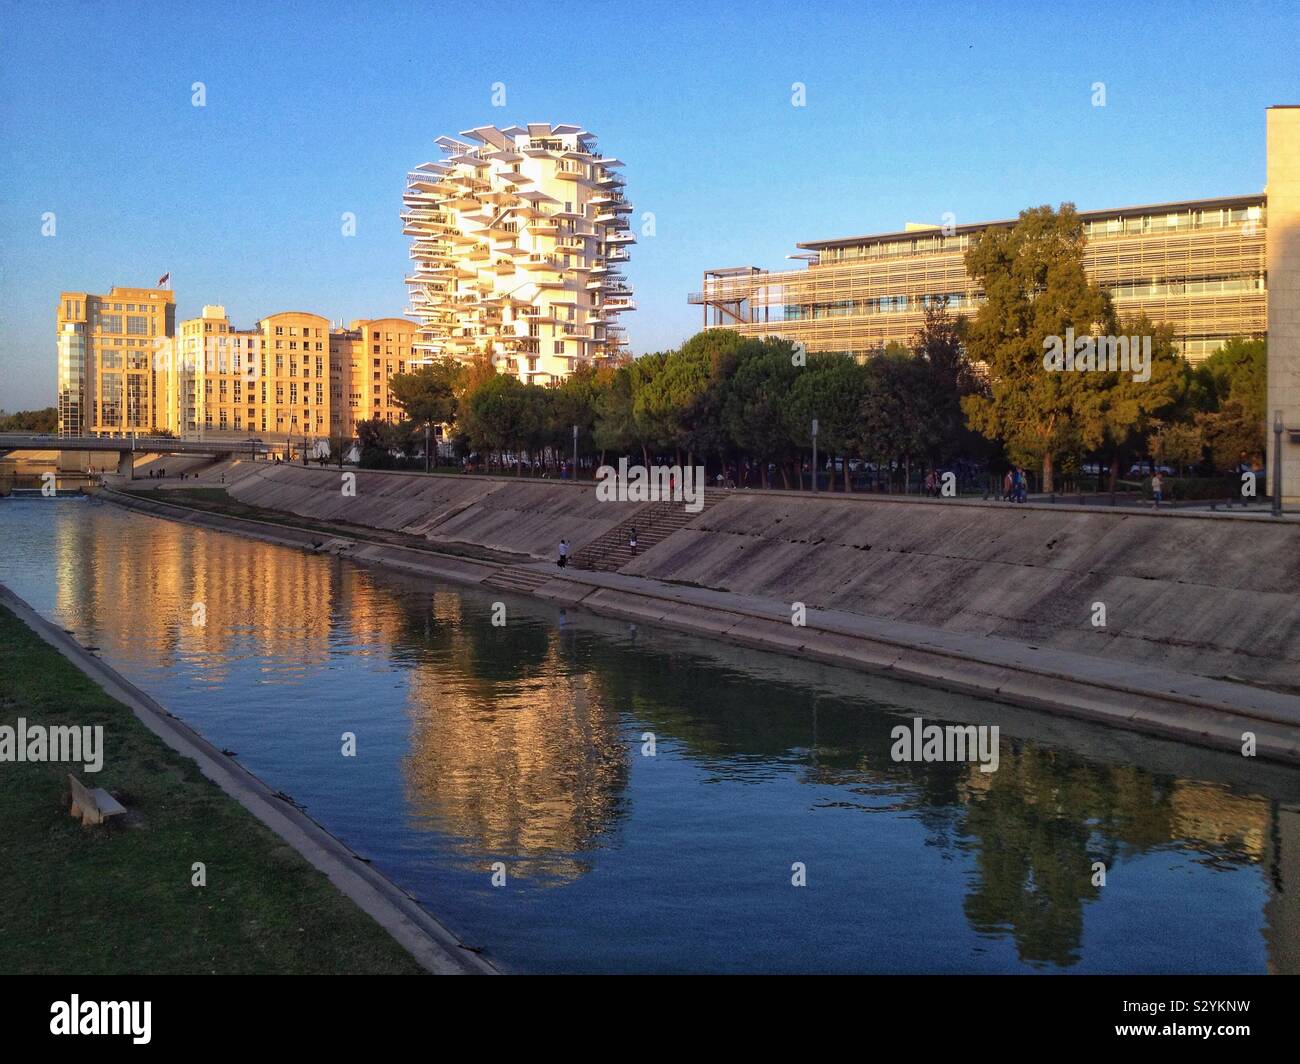 L'immobilier sur les rives de la rivière Lez, Montpellier France Banque D'Images